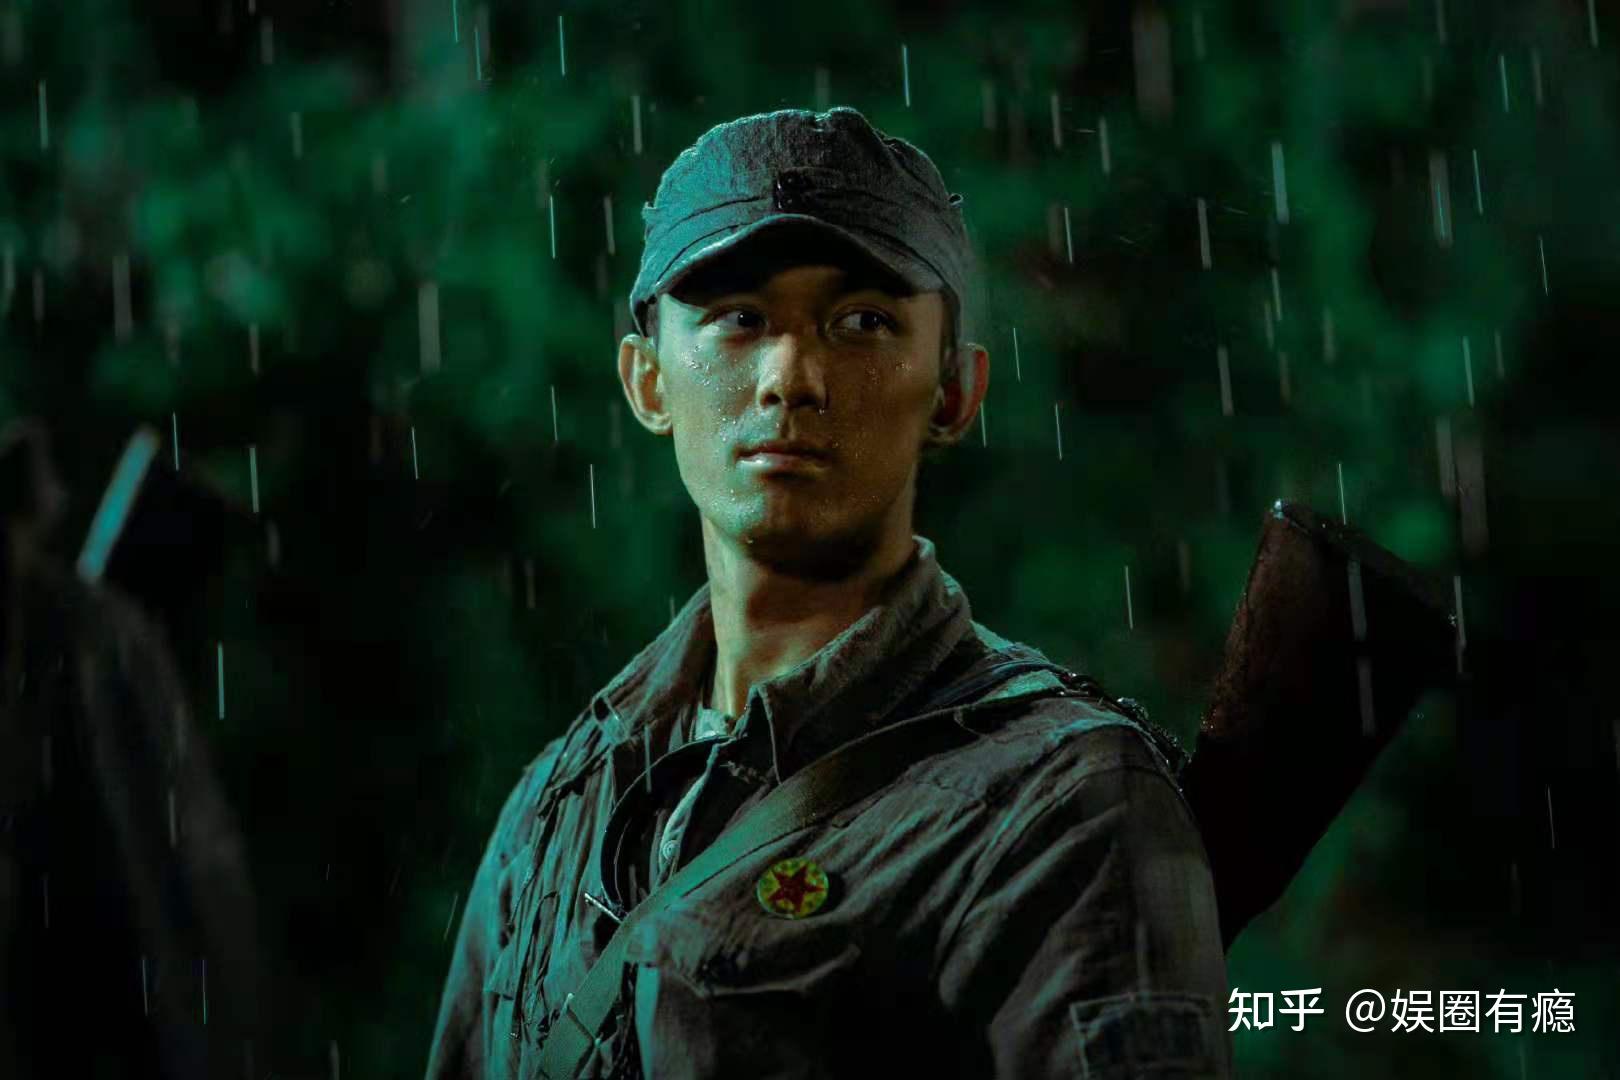 吴磊在国庆档只出演了《我和我的父辈》中吴京导演的《乘风》单元,但